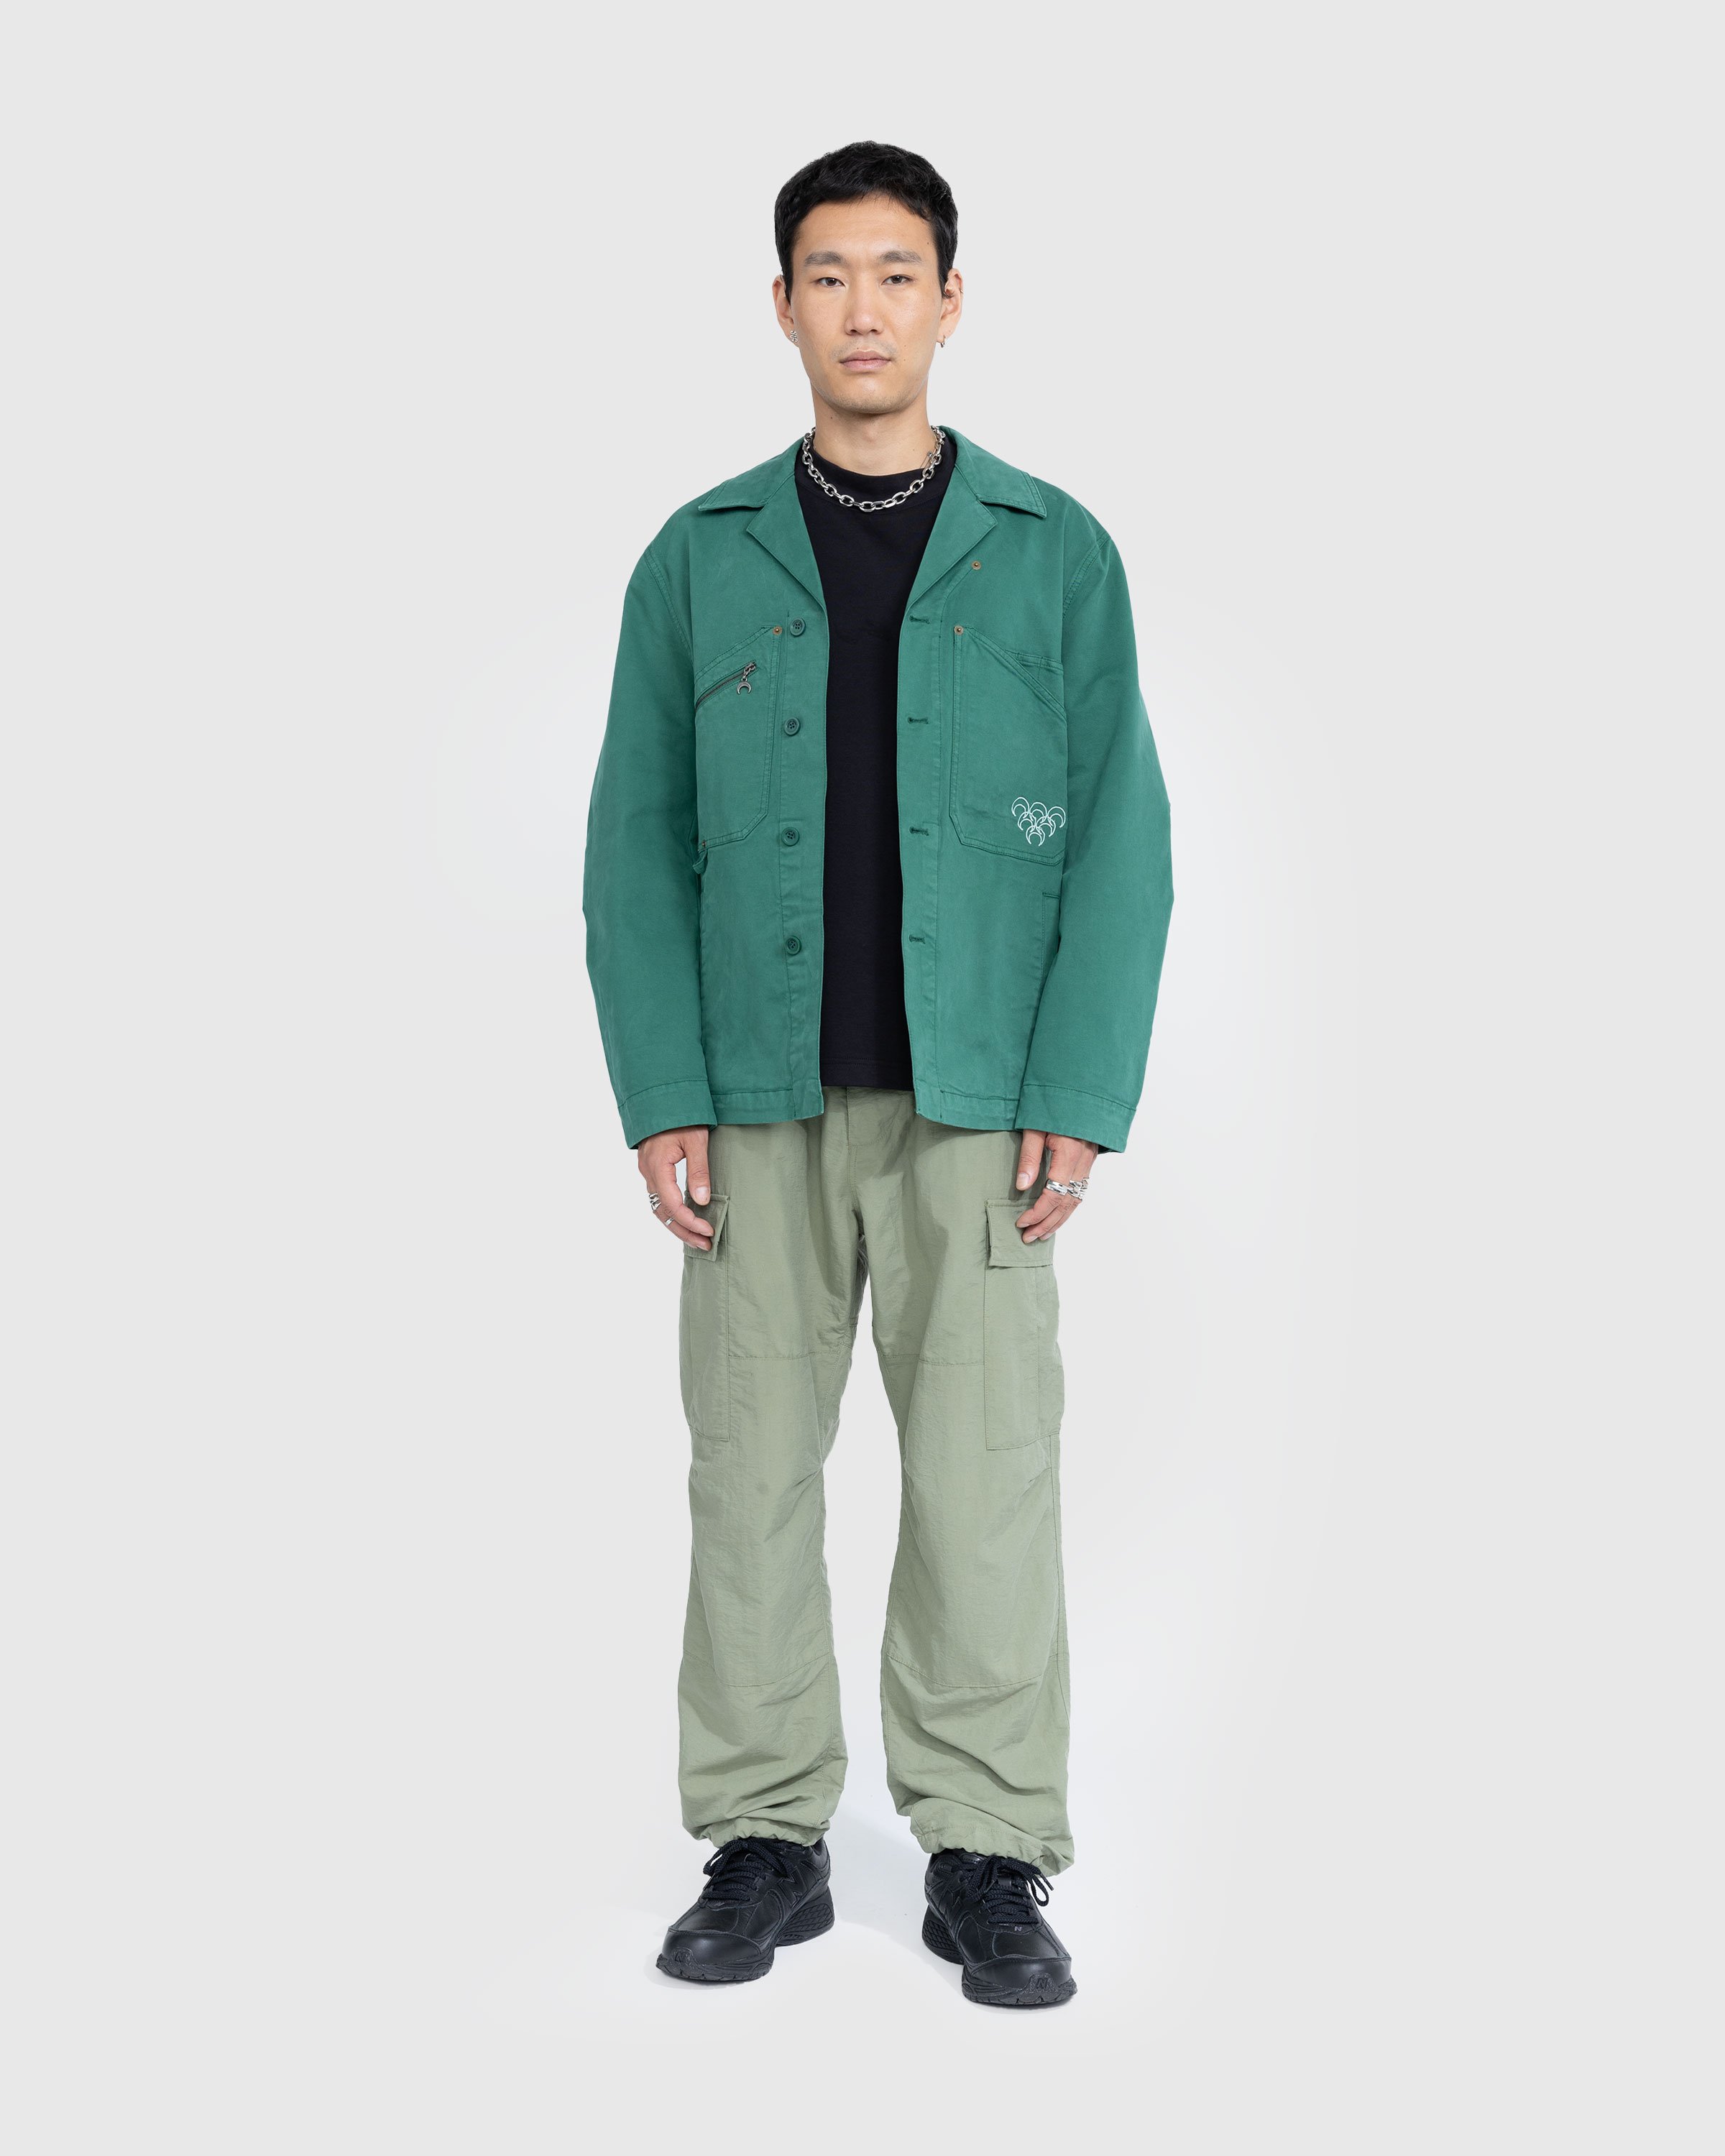 Marine Serre - Workwear Jacket Evergreen - Clothing - Green - Image 3